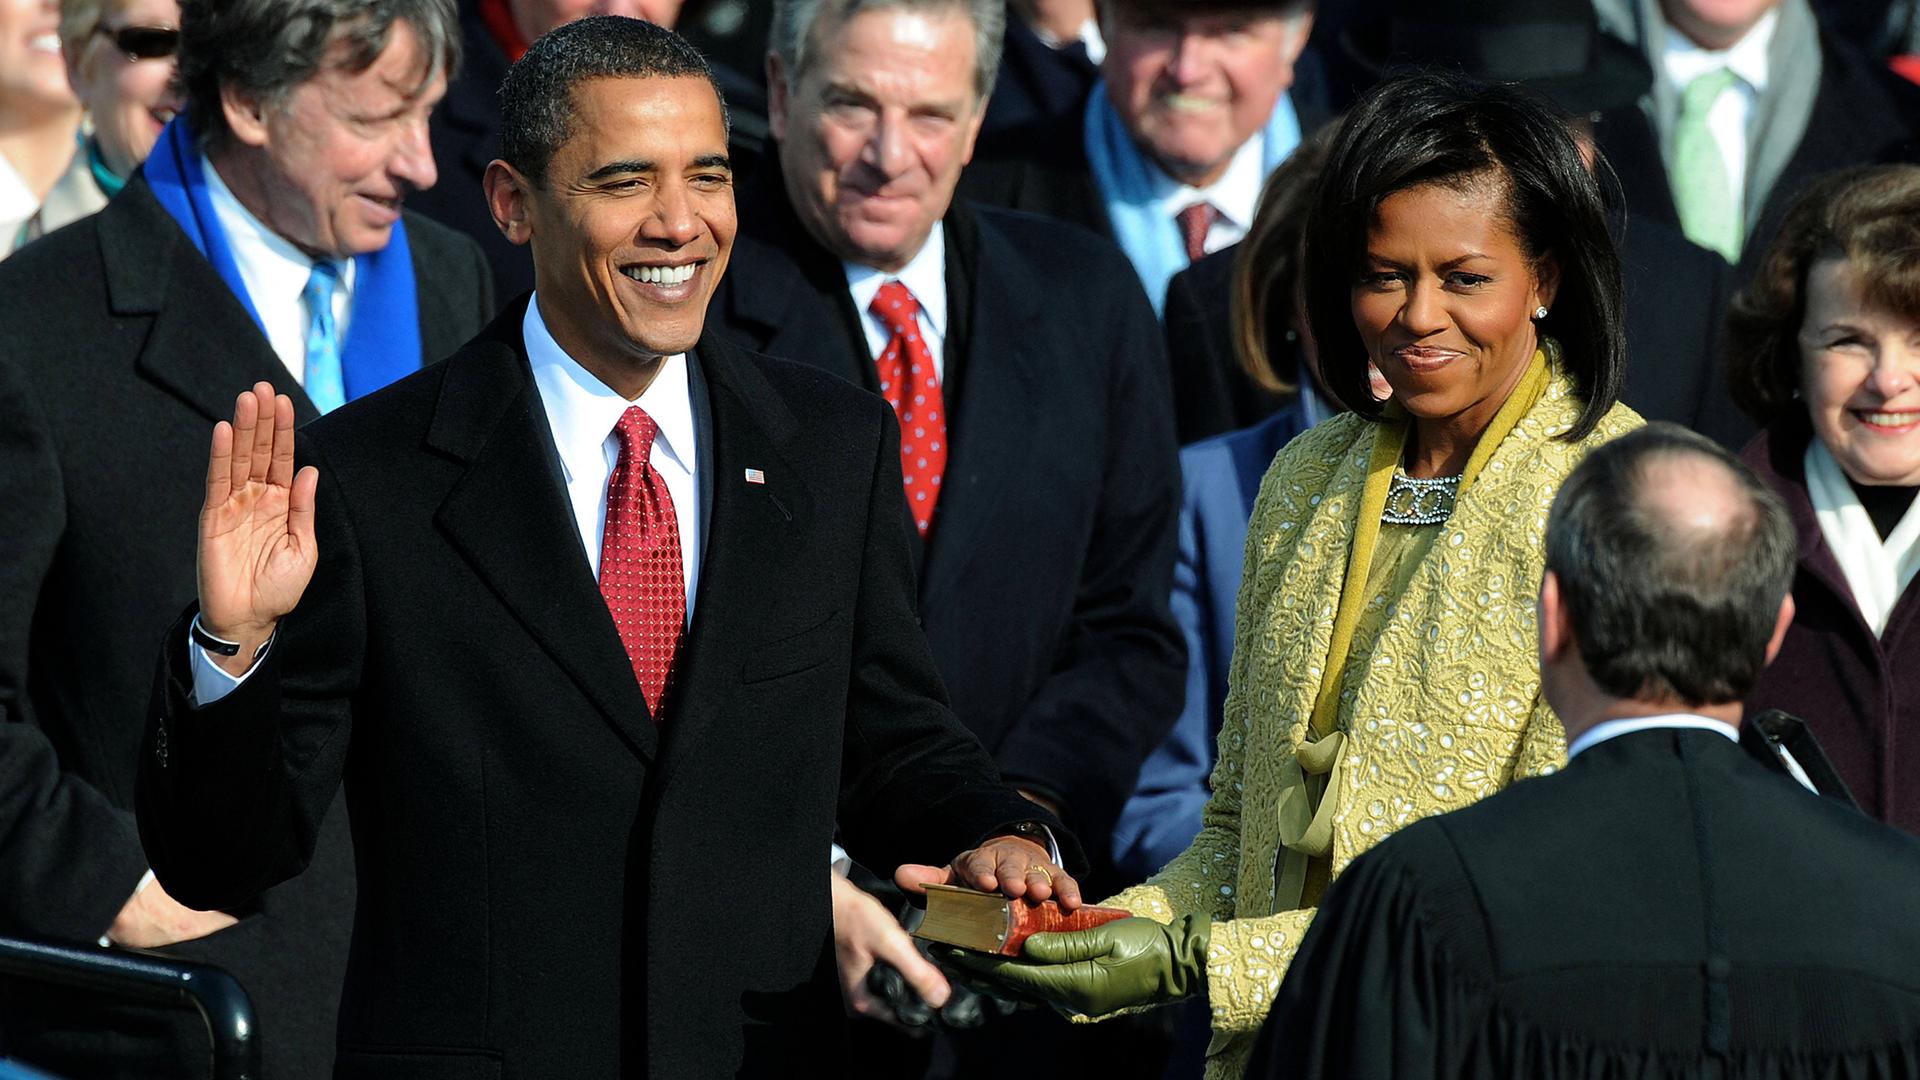 Barack Obama schwört mit einer Hand auf die Bibel bei seiner Amtseinführung 2009 am Kapitol in Washington, seine Frau Michelle Obama hält die Bibel.